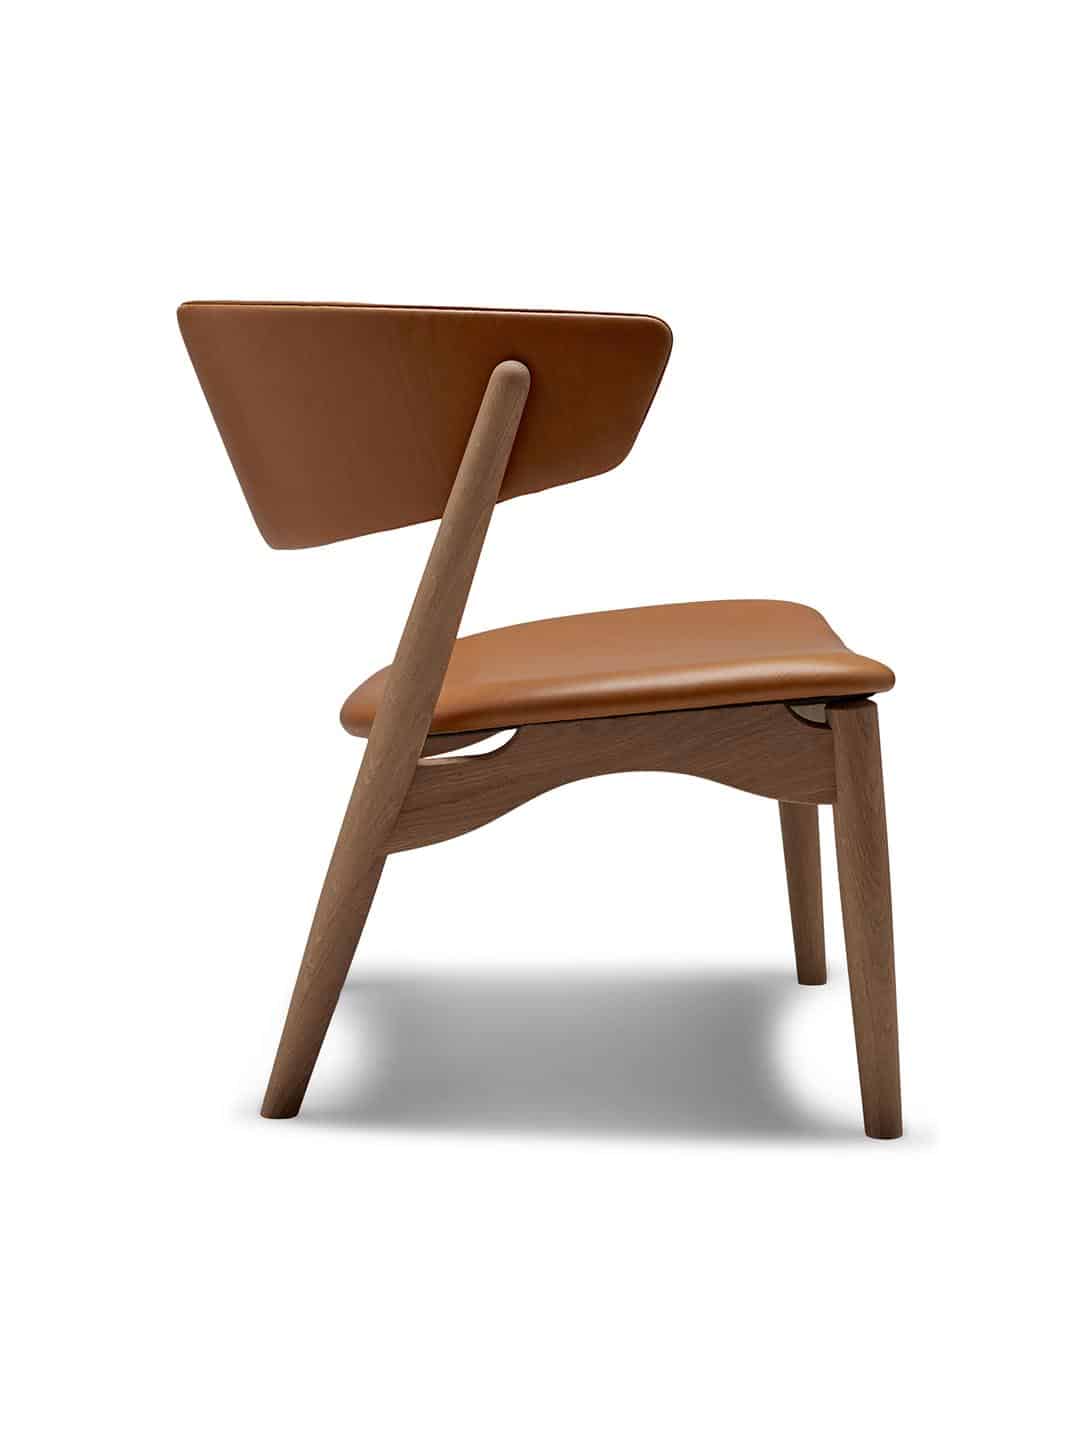 Дизайнерское кресло Sibast №7 дуб, покрытый белым маслом/кожа silk250 коньячного цвета на белом фоне